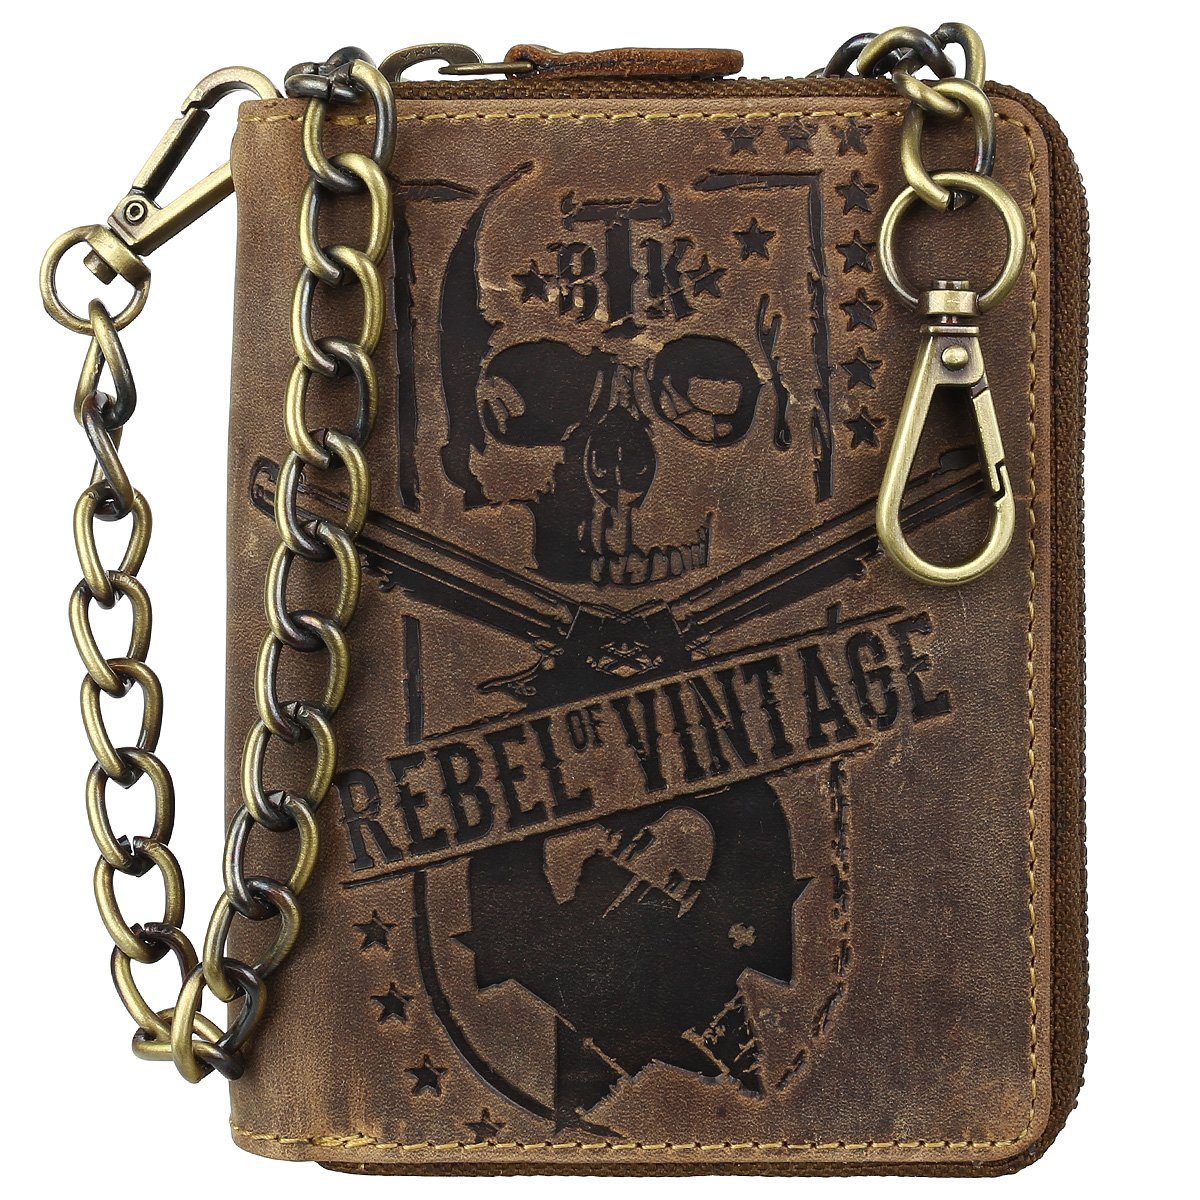 Kette mit Reißverschluss Geldbörse Leder Schutz, RFID Bikerbörse 45cm Totenkopf Skull Kette, Greenburry Karabiner Motiv, mit Geldbörse Portemonnaie